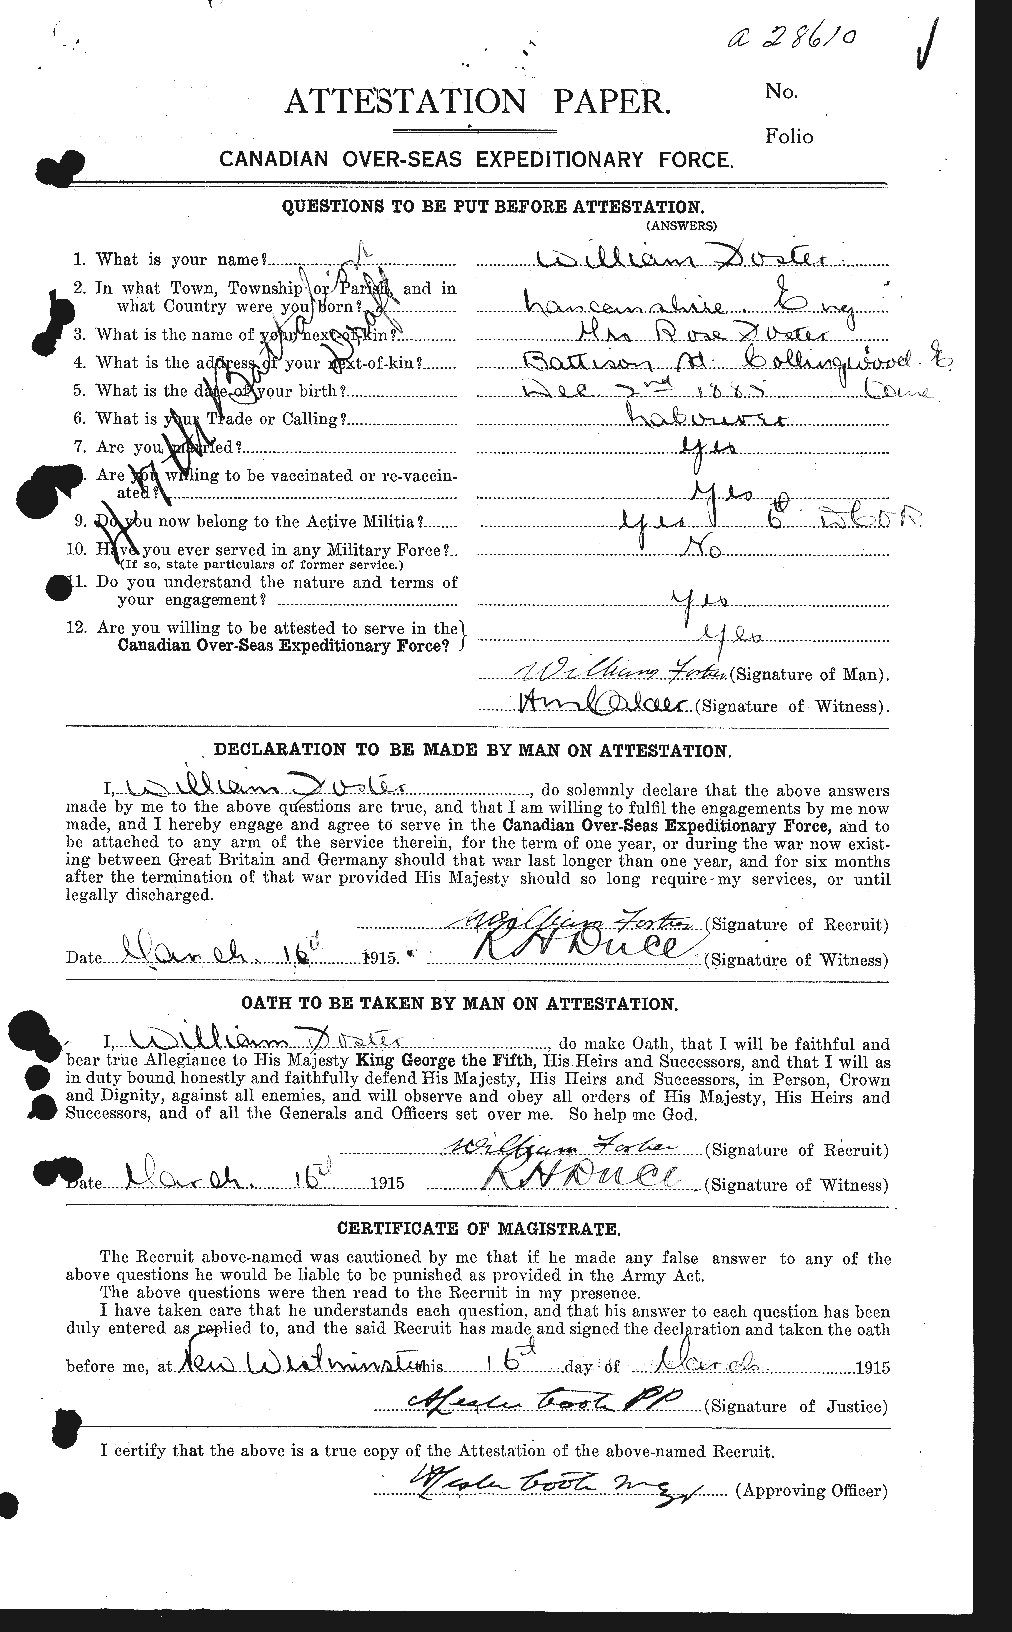 Dossiers du Personnel de la Première Guerre mondiale - CEC 328716a